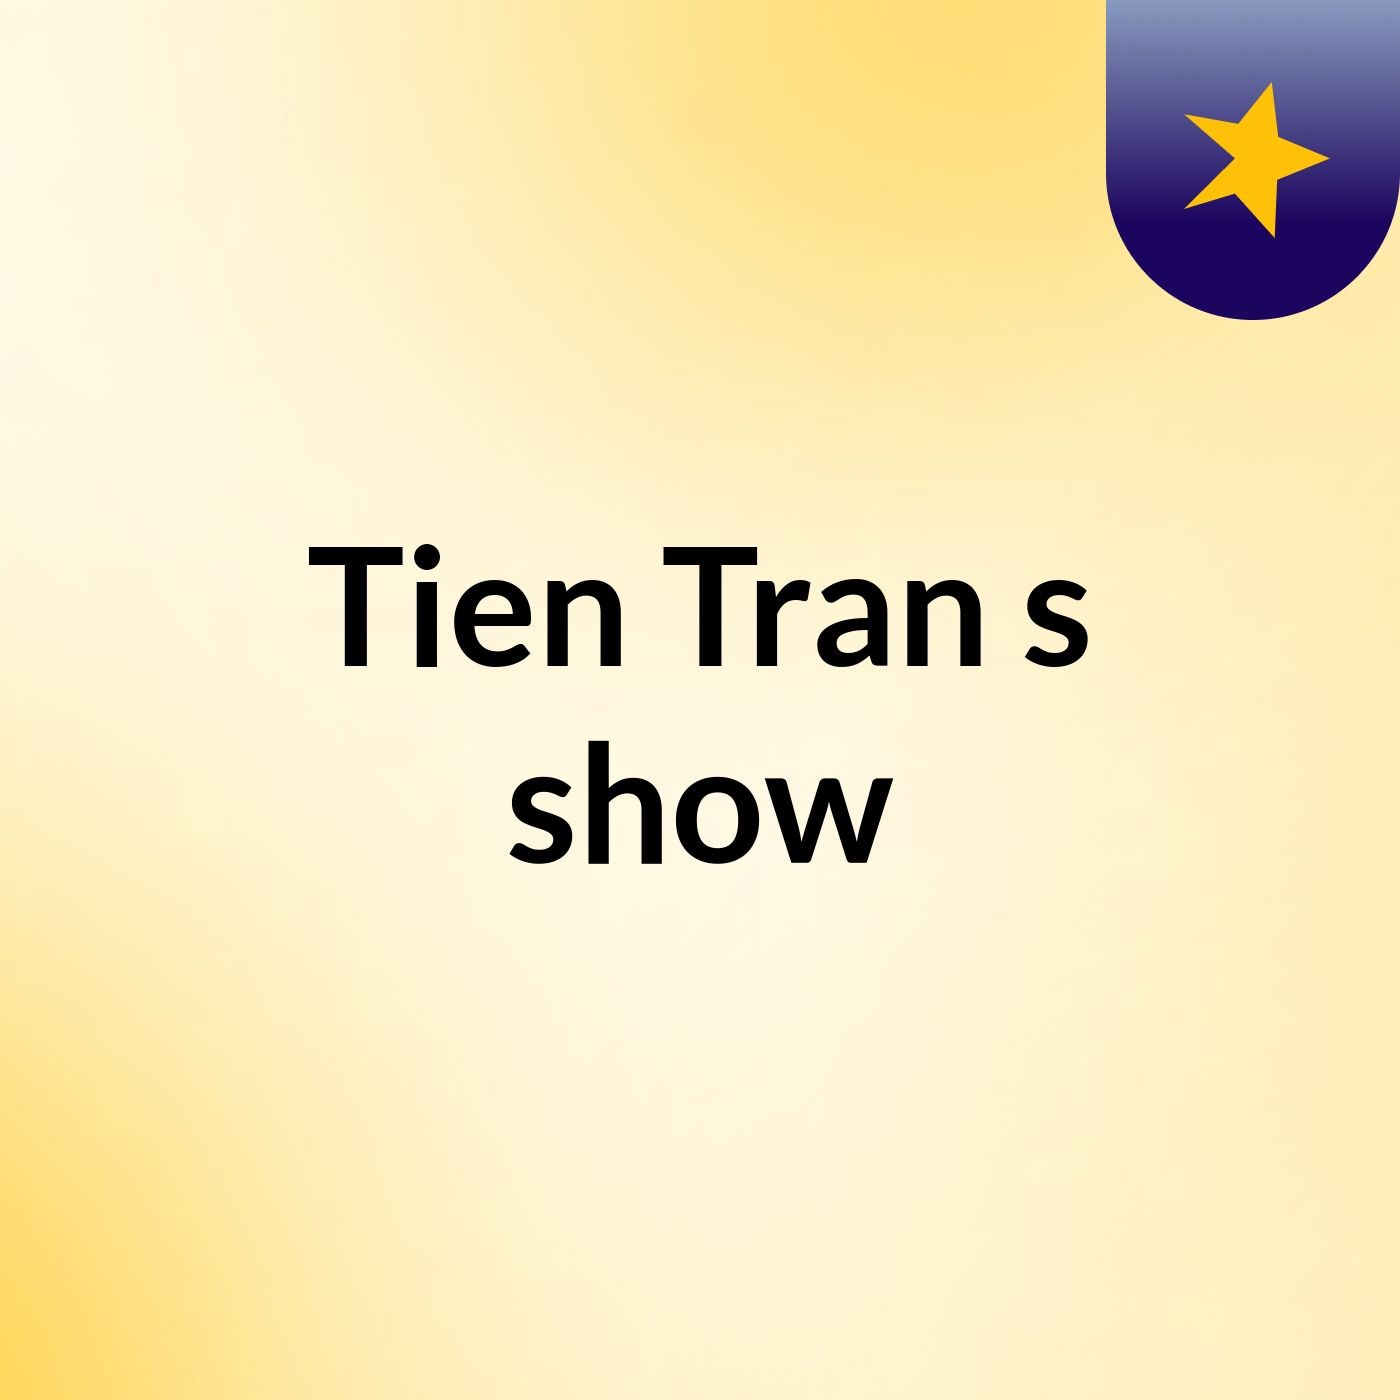 Tien Tran's show